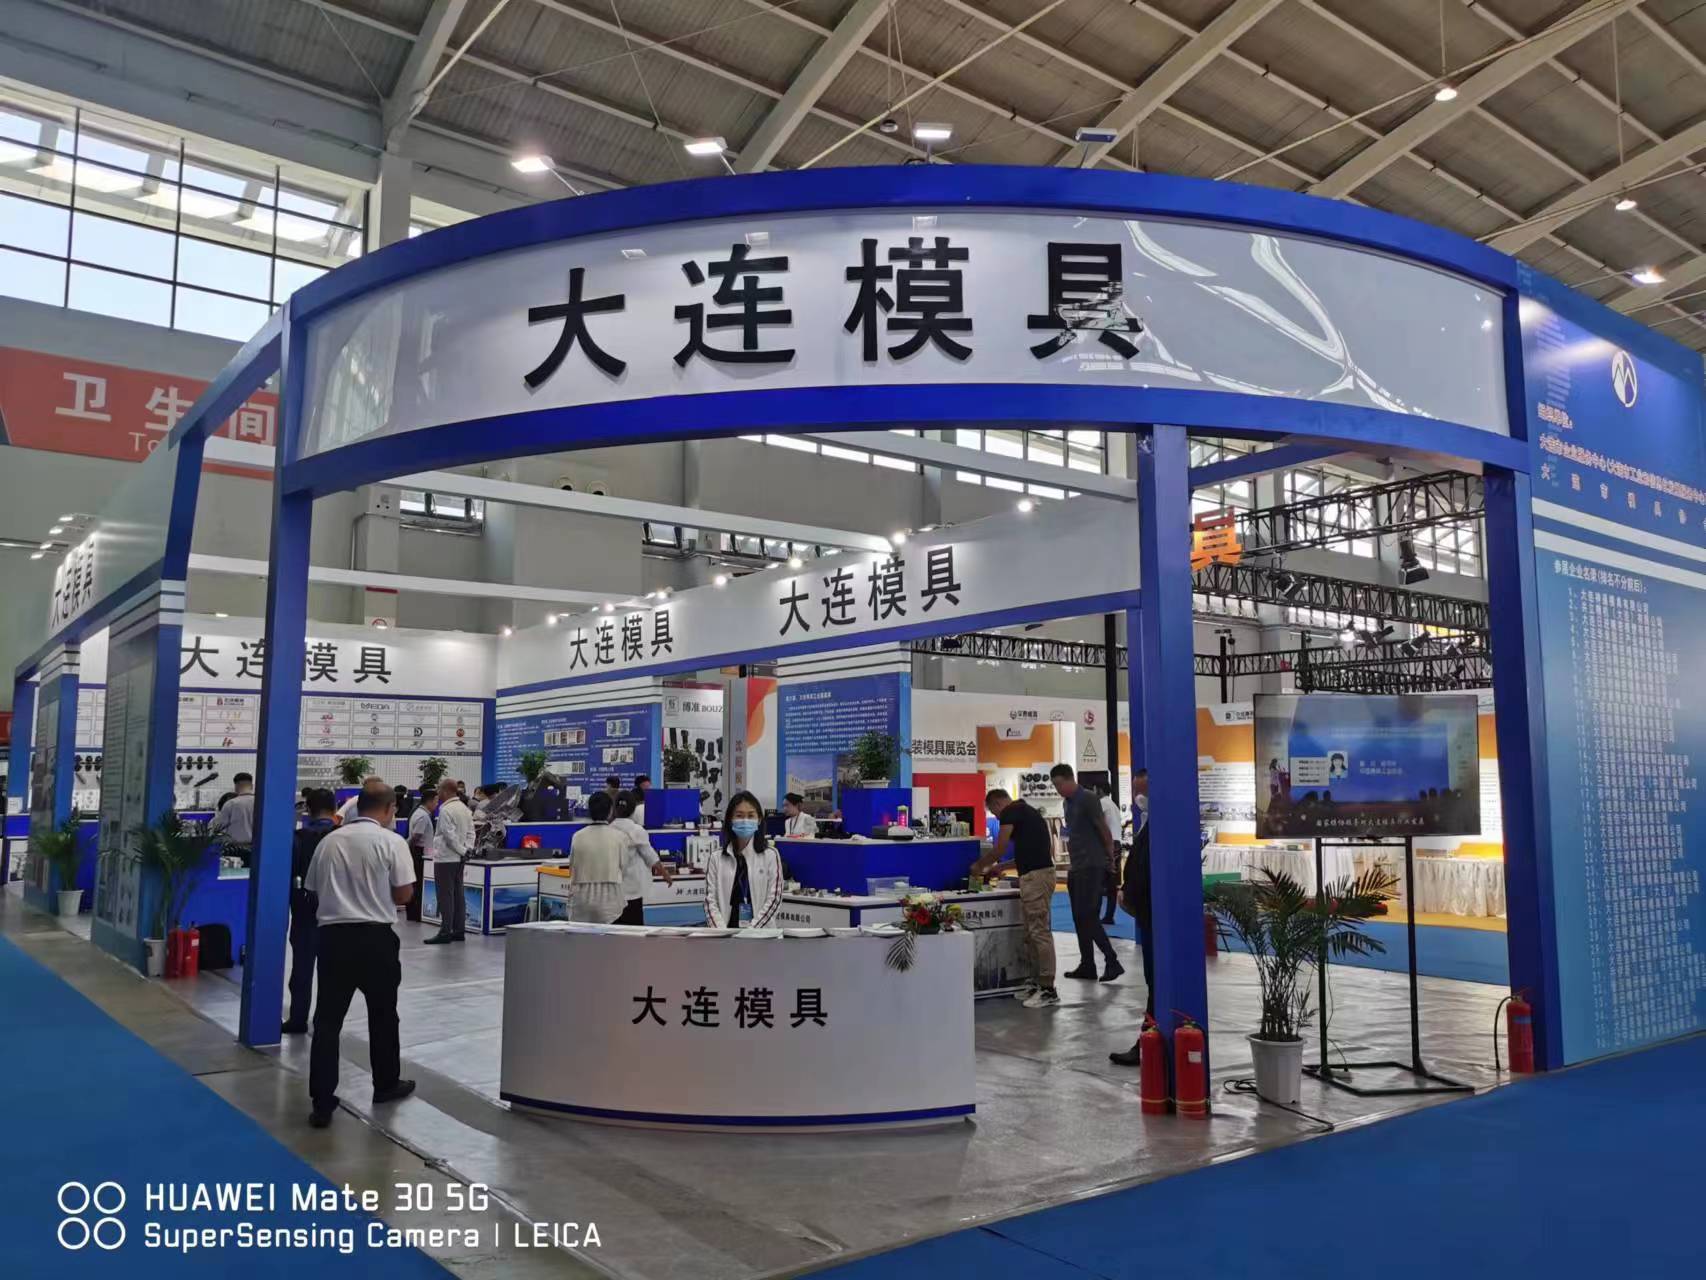 21-я Китайская международная выставка производства оборудования